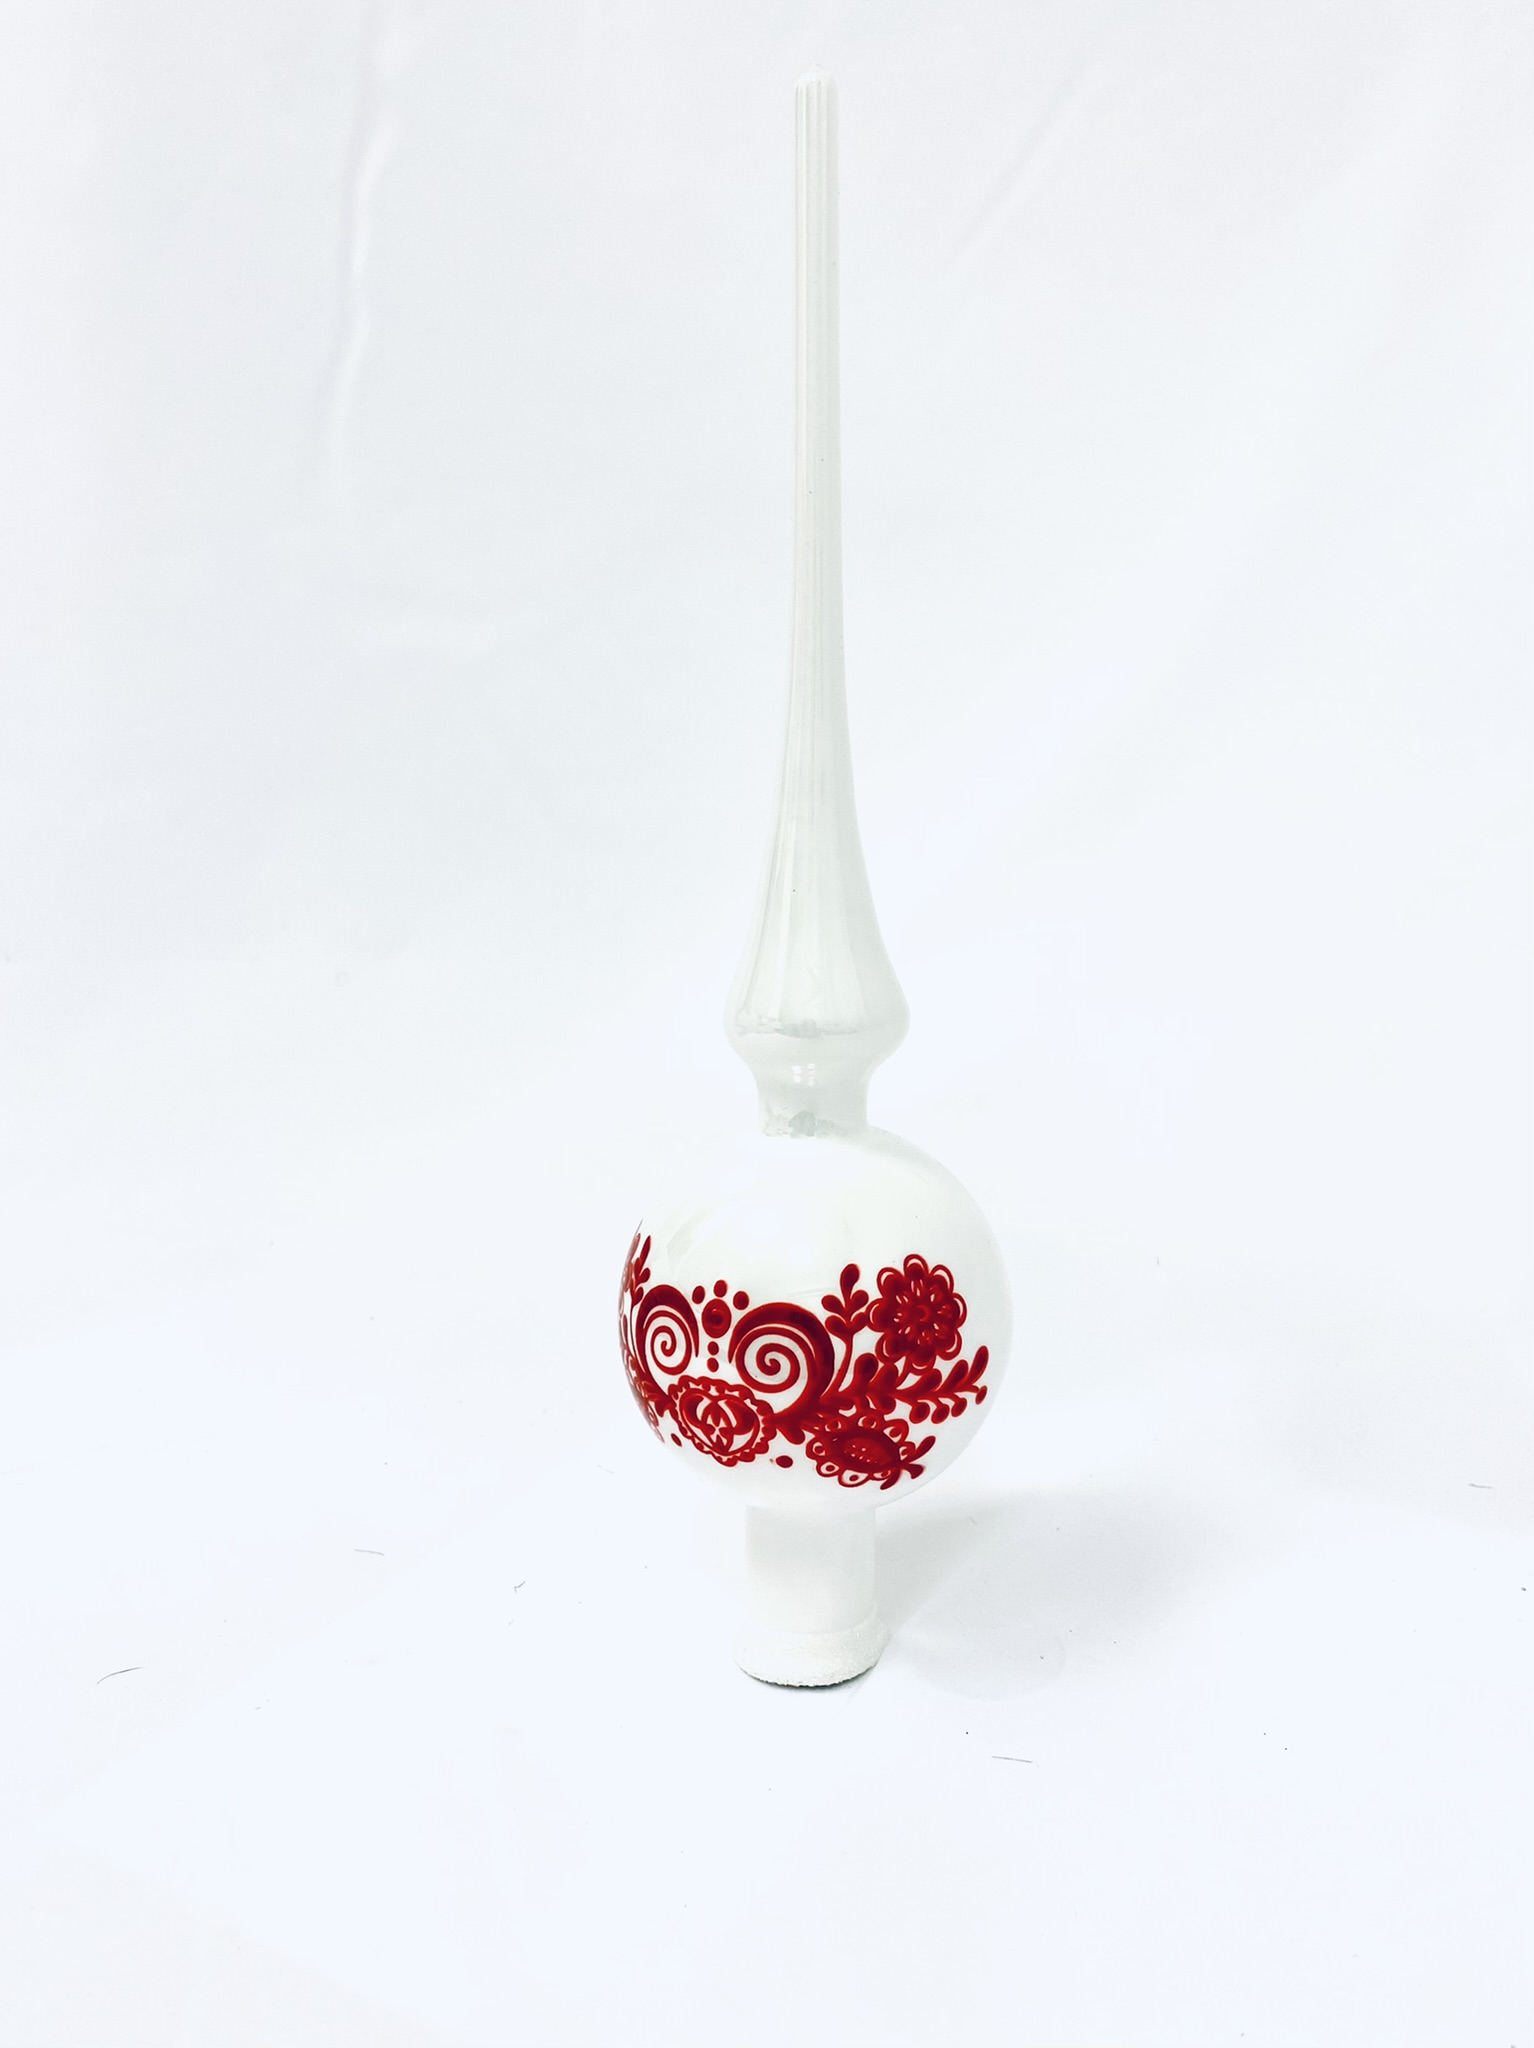 Irisa Vánoční ozdoby DANKA bílá špice s dekorem cibulák 28 cm, 1 ks Balení: 1ks, Barva: bílá, Velikost: 30 cm